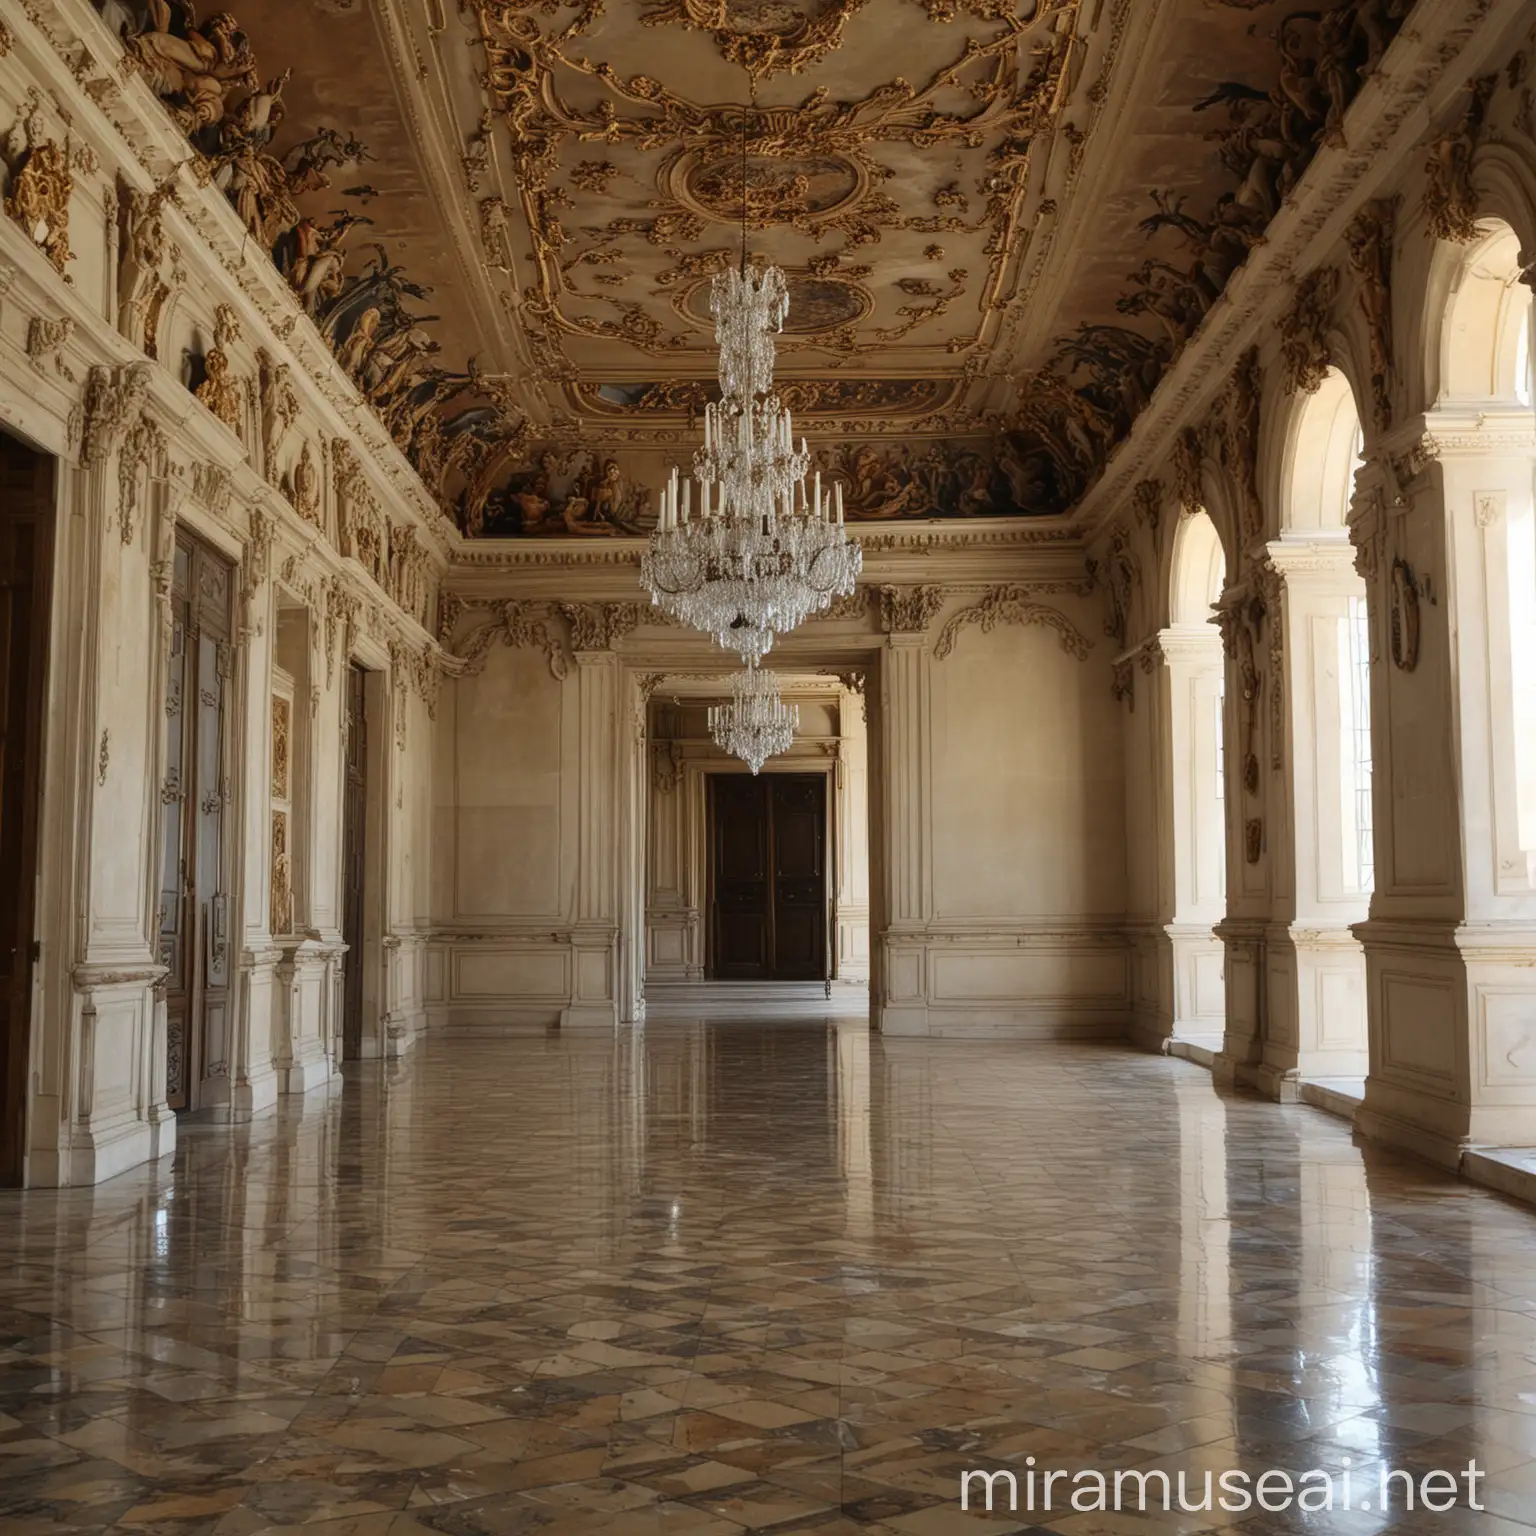 Palacio de Versalles Majestic Architecture and Ornate Gardens